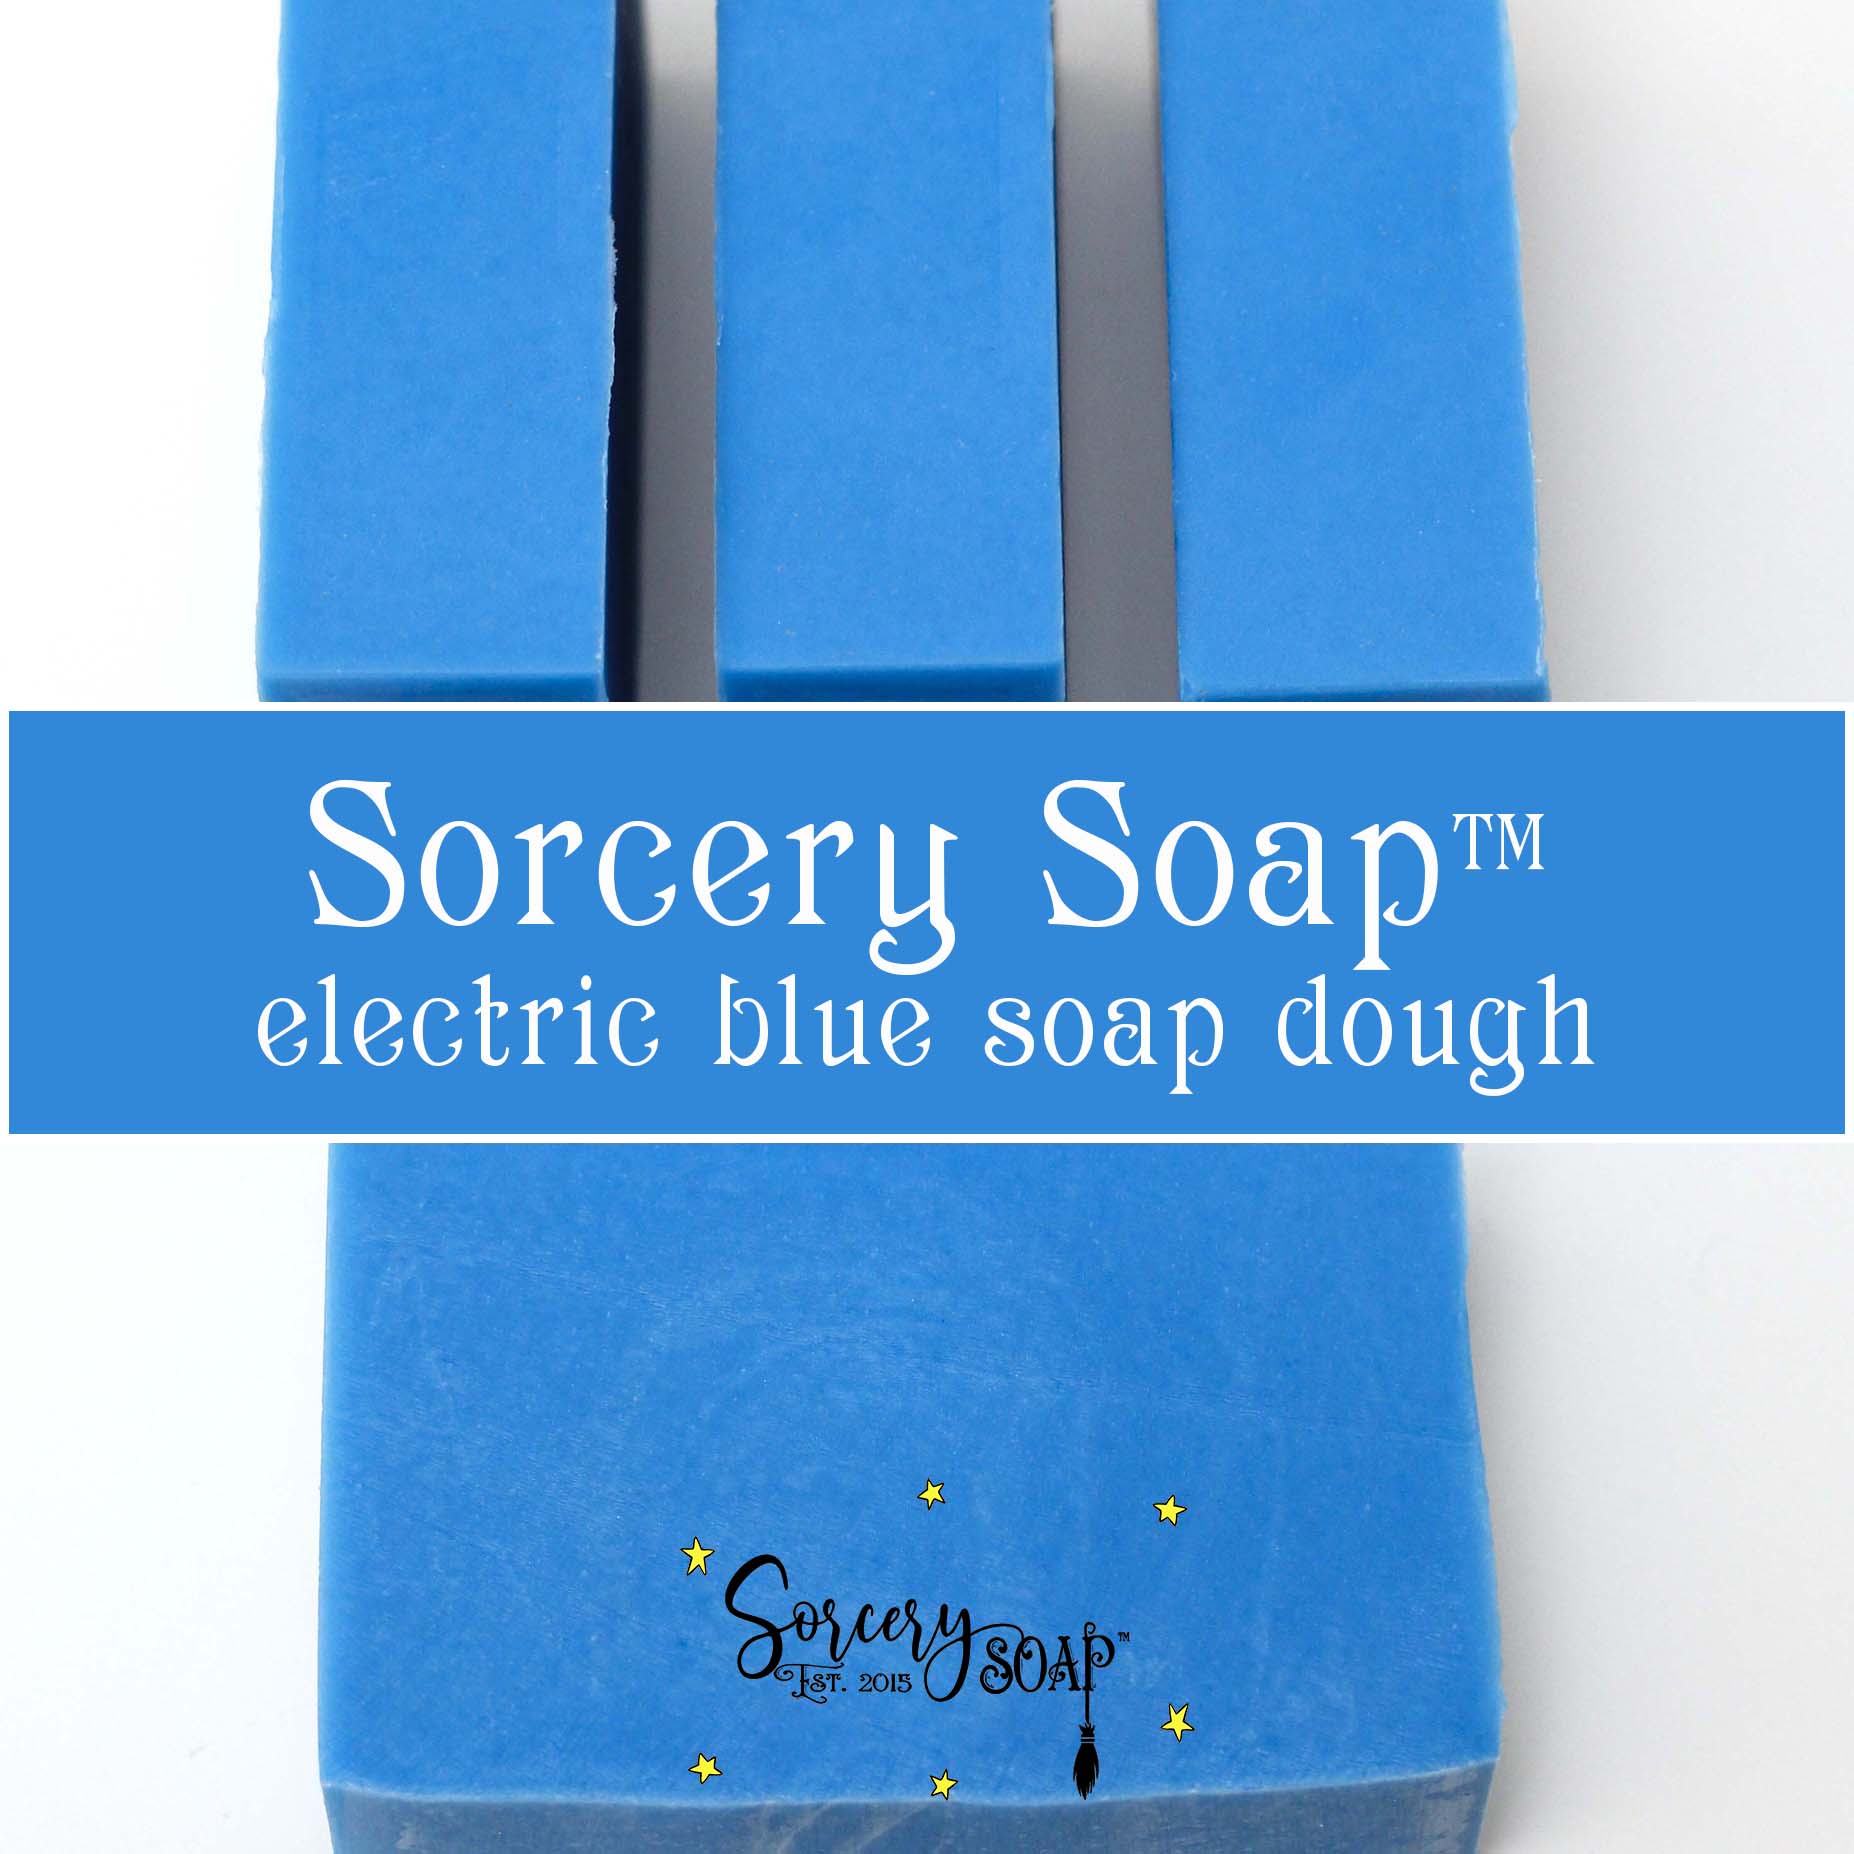 electric blue soap dough